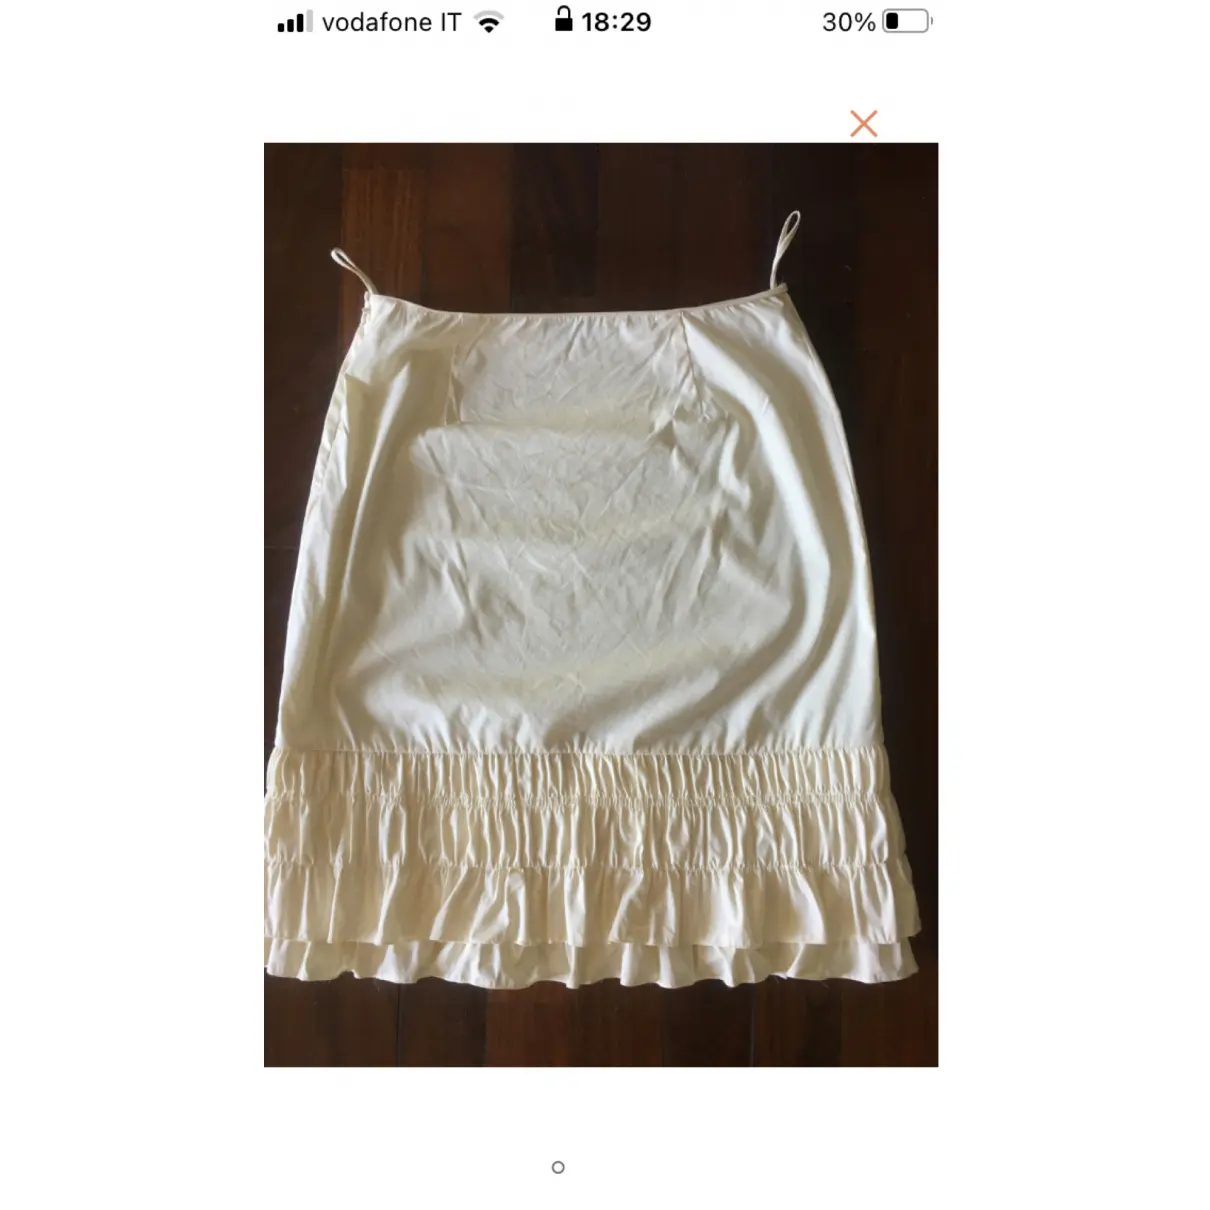 Buy Prada Mini skirt online